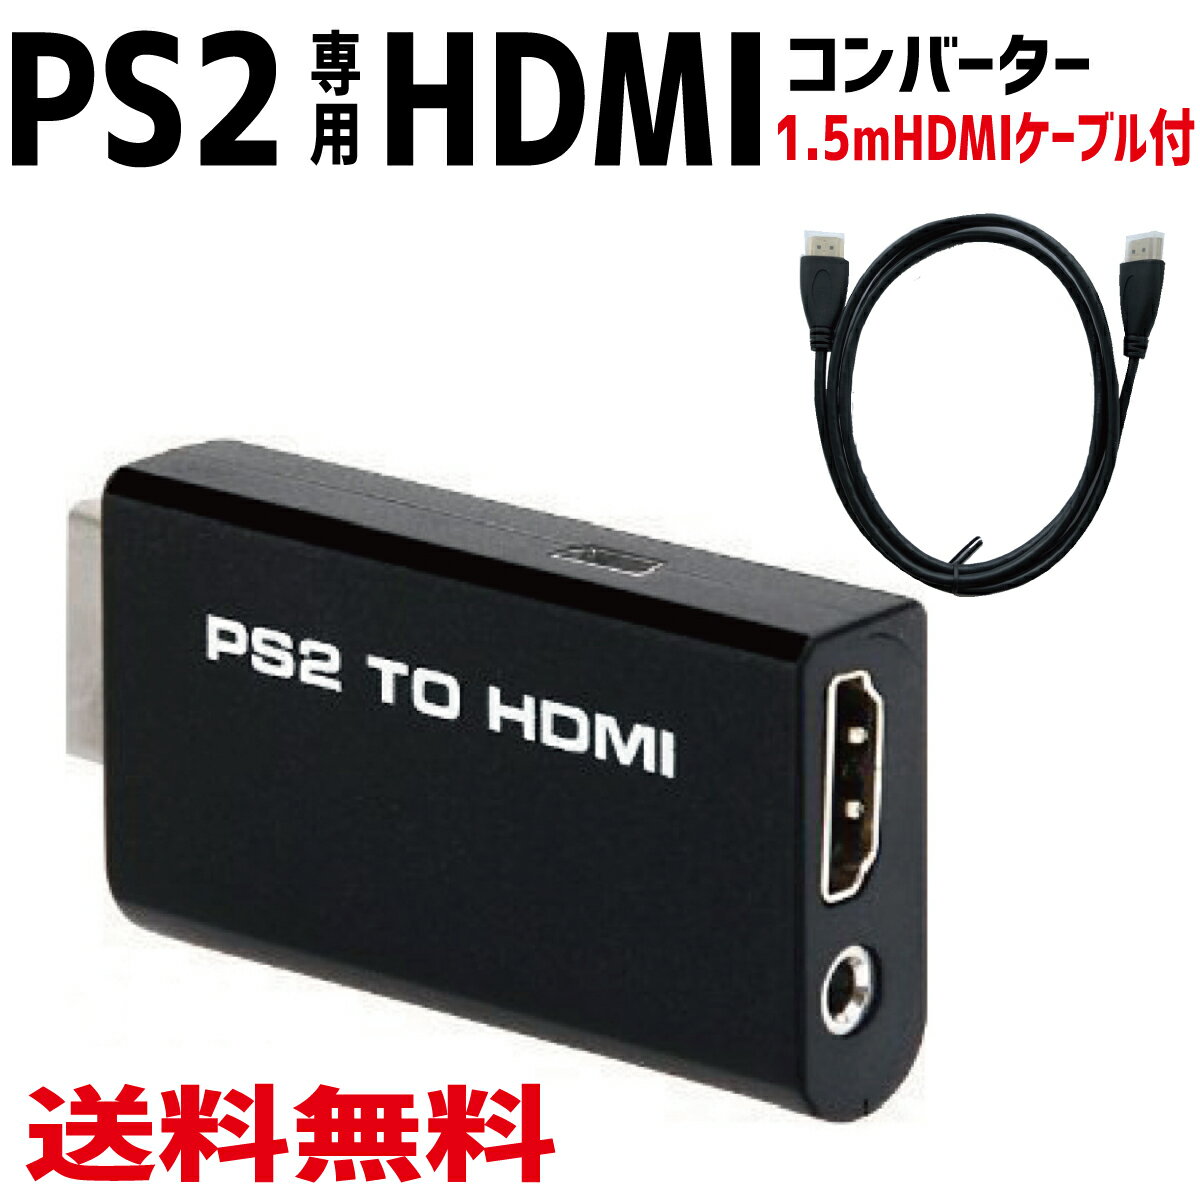  SiP2{  PS2 TO HDMI Ro[^[ PS2p PS2 to HDMI ڑRlN^ ϊ A_v^[ 1.5mHDMIP[ut